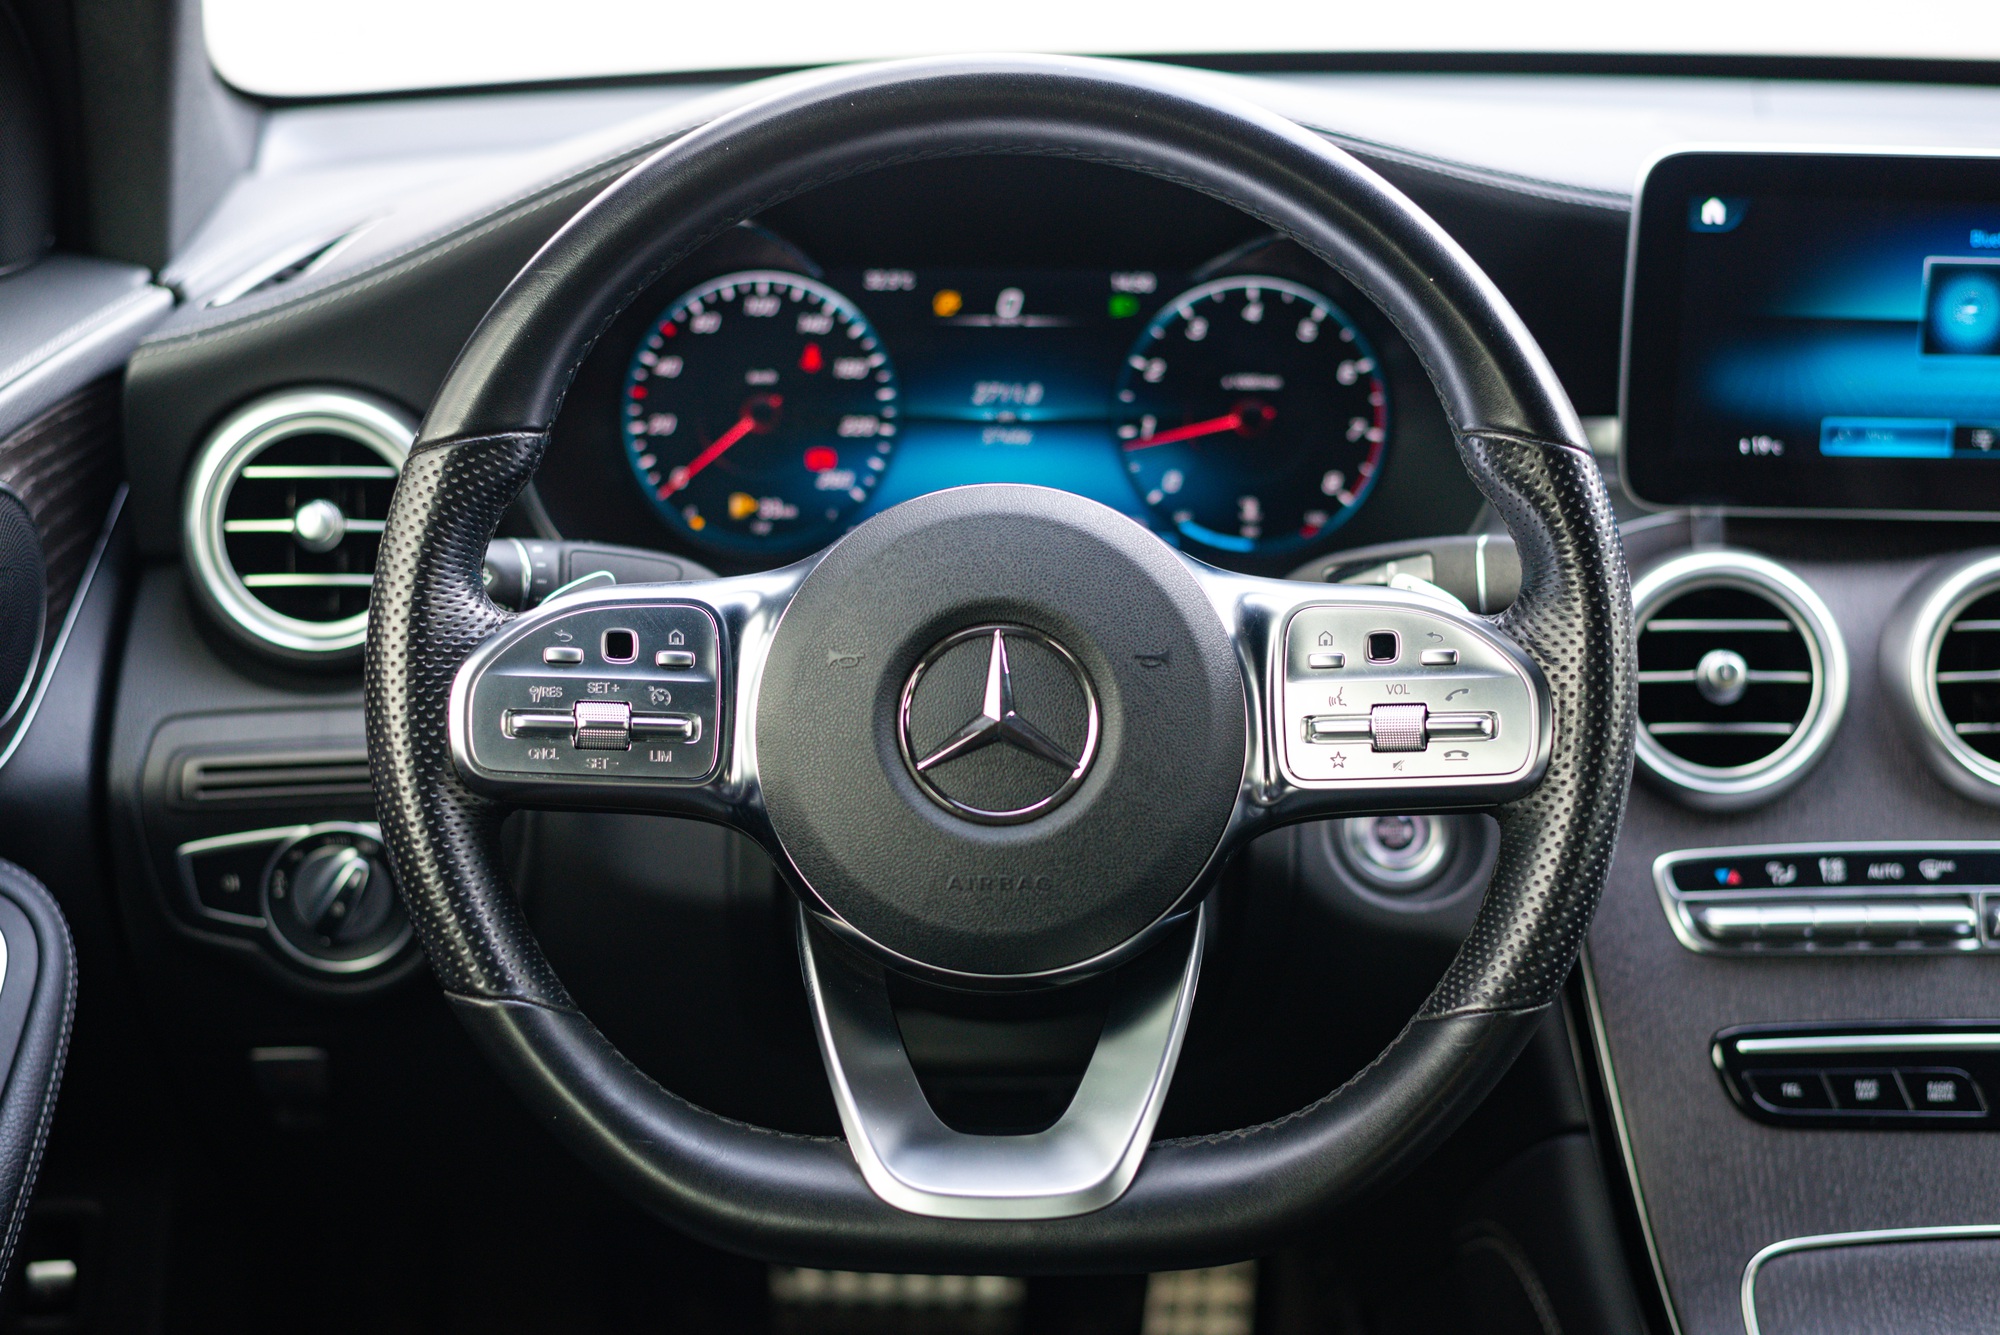 ‘Hàng hiếm’ Mercedes-Benz GLC 300 Coupe 2 năm tuổi được rao bán lại với mức giá gần 2,7 tỷ đồng - Ảnh 10.